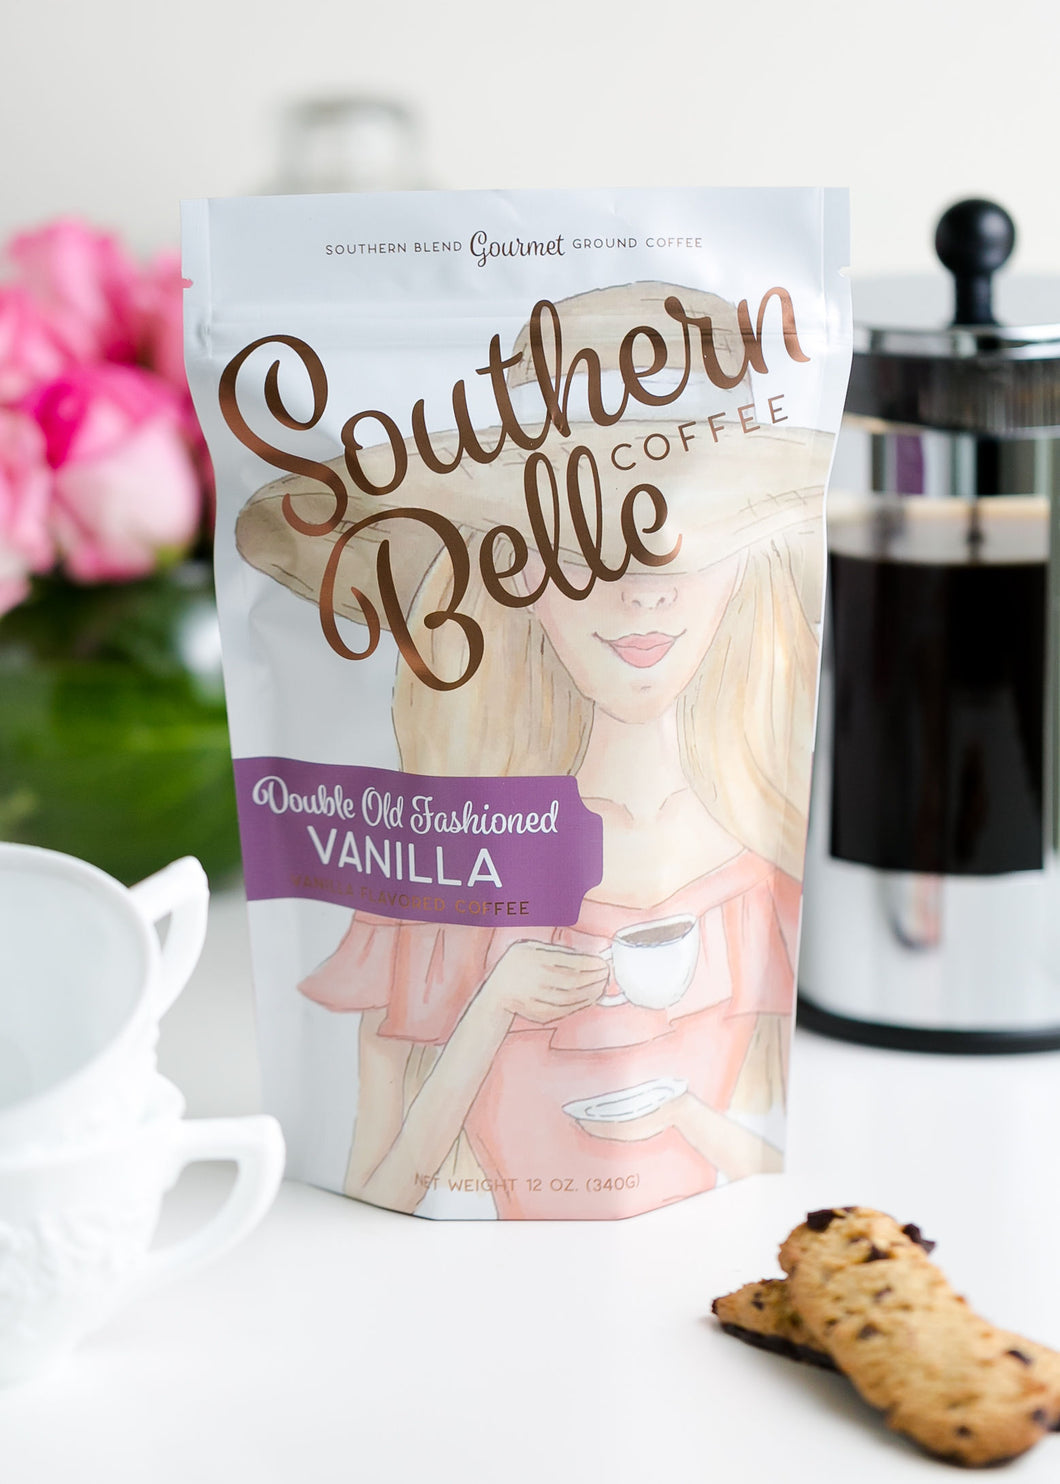 Double Old Fashioned Vanilla - Vanilla Flavored Coffee